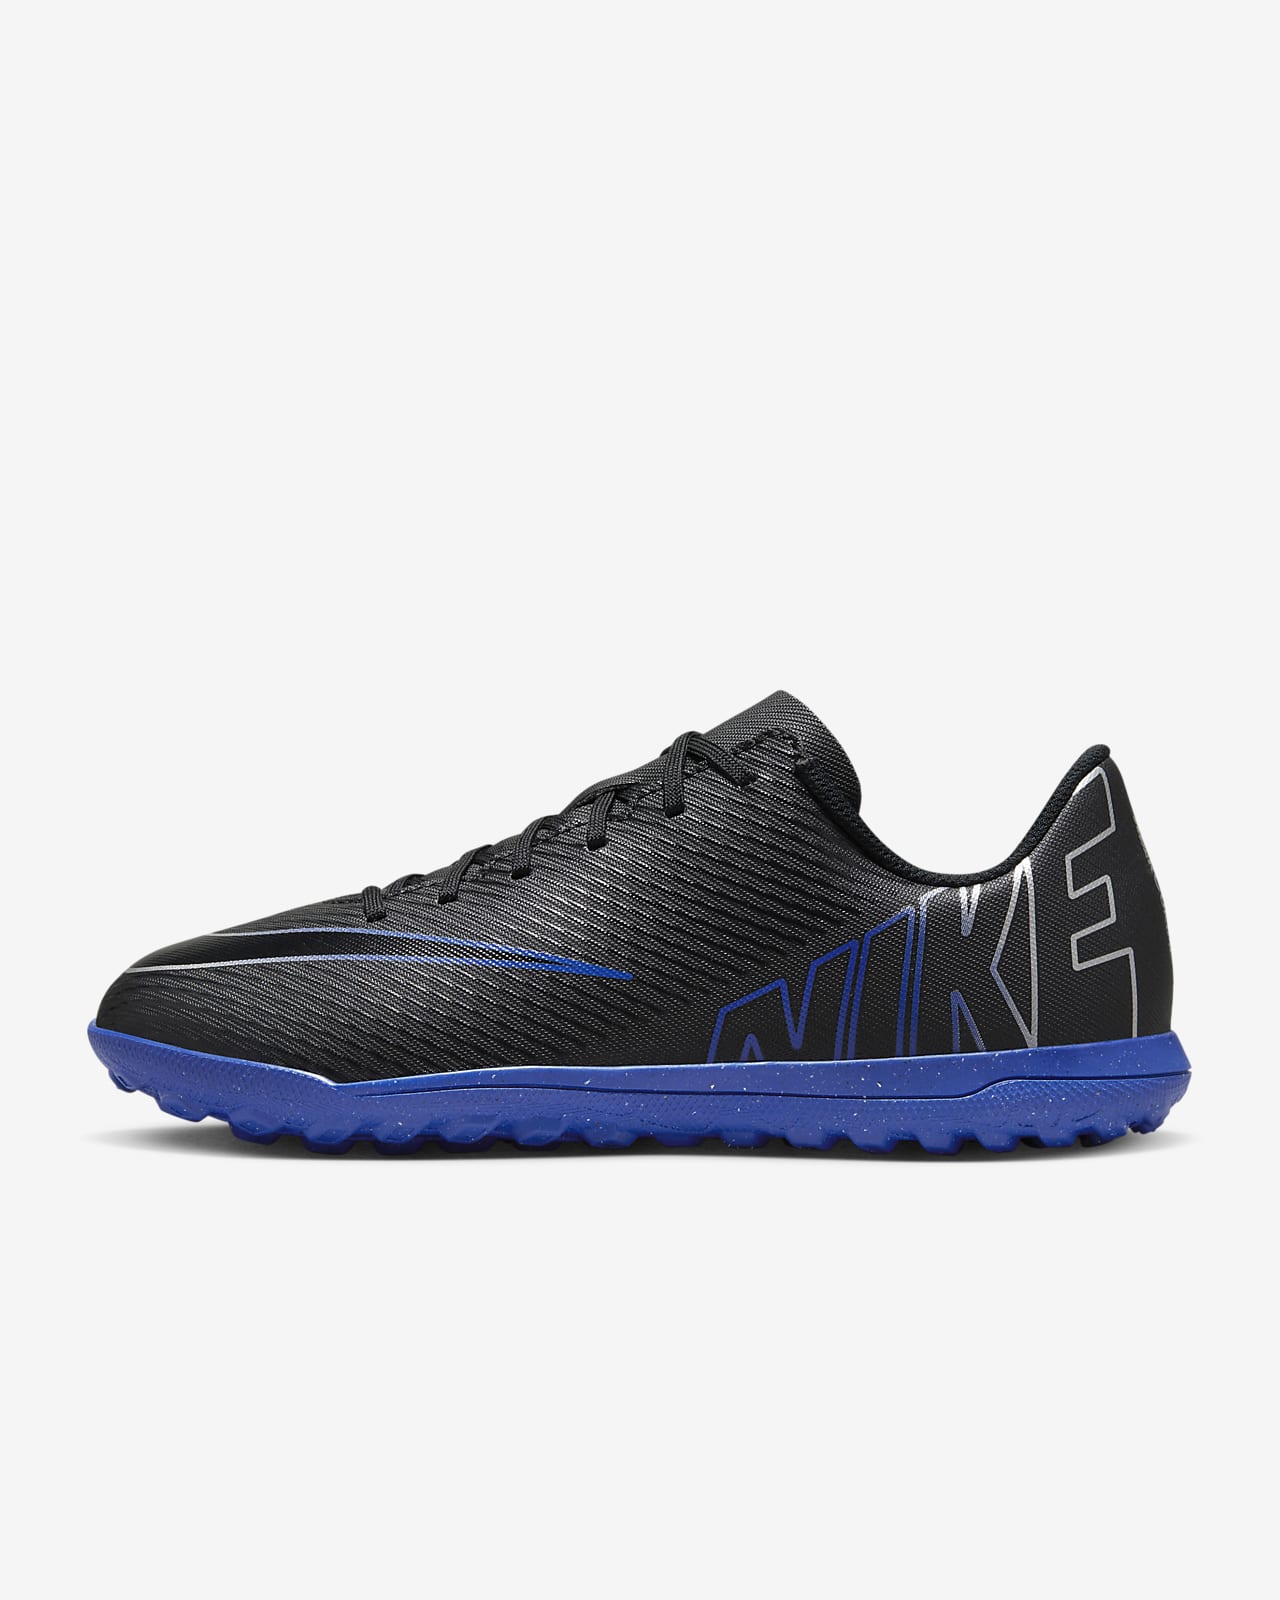 Chaussure de foot basse pour surface synthétique Nike Jr. Mercurial Vapor 15 Club pour enfant/ado